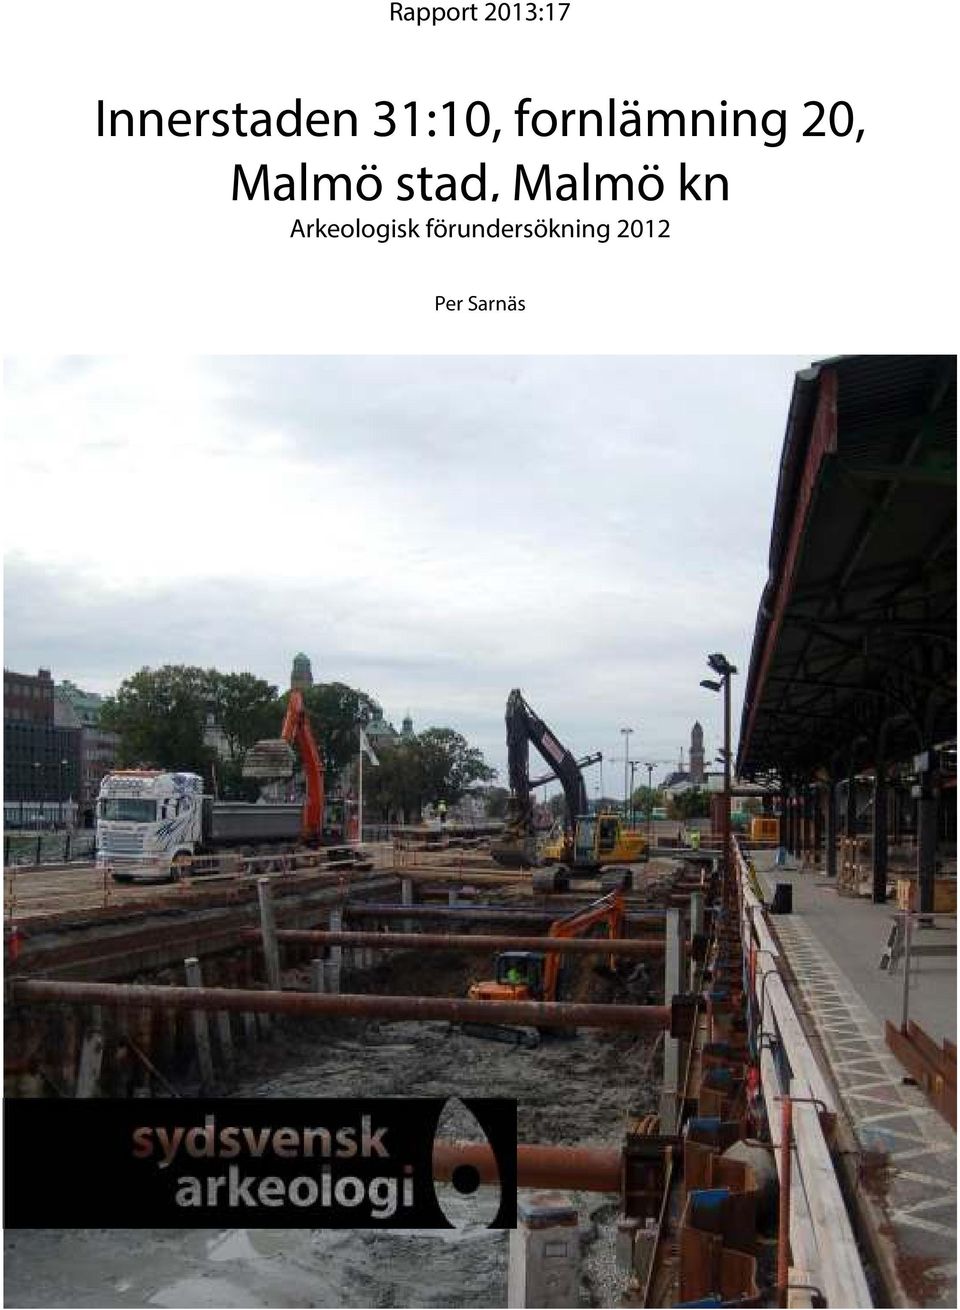 stad, Malmö kn Arkeologisk